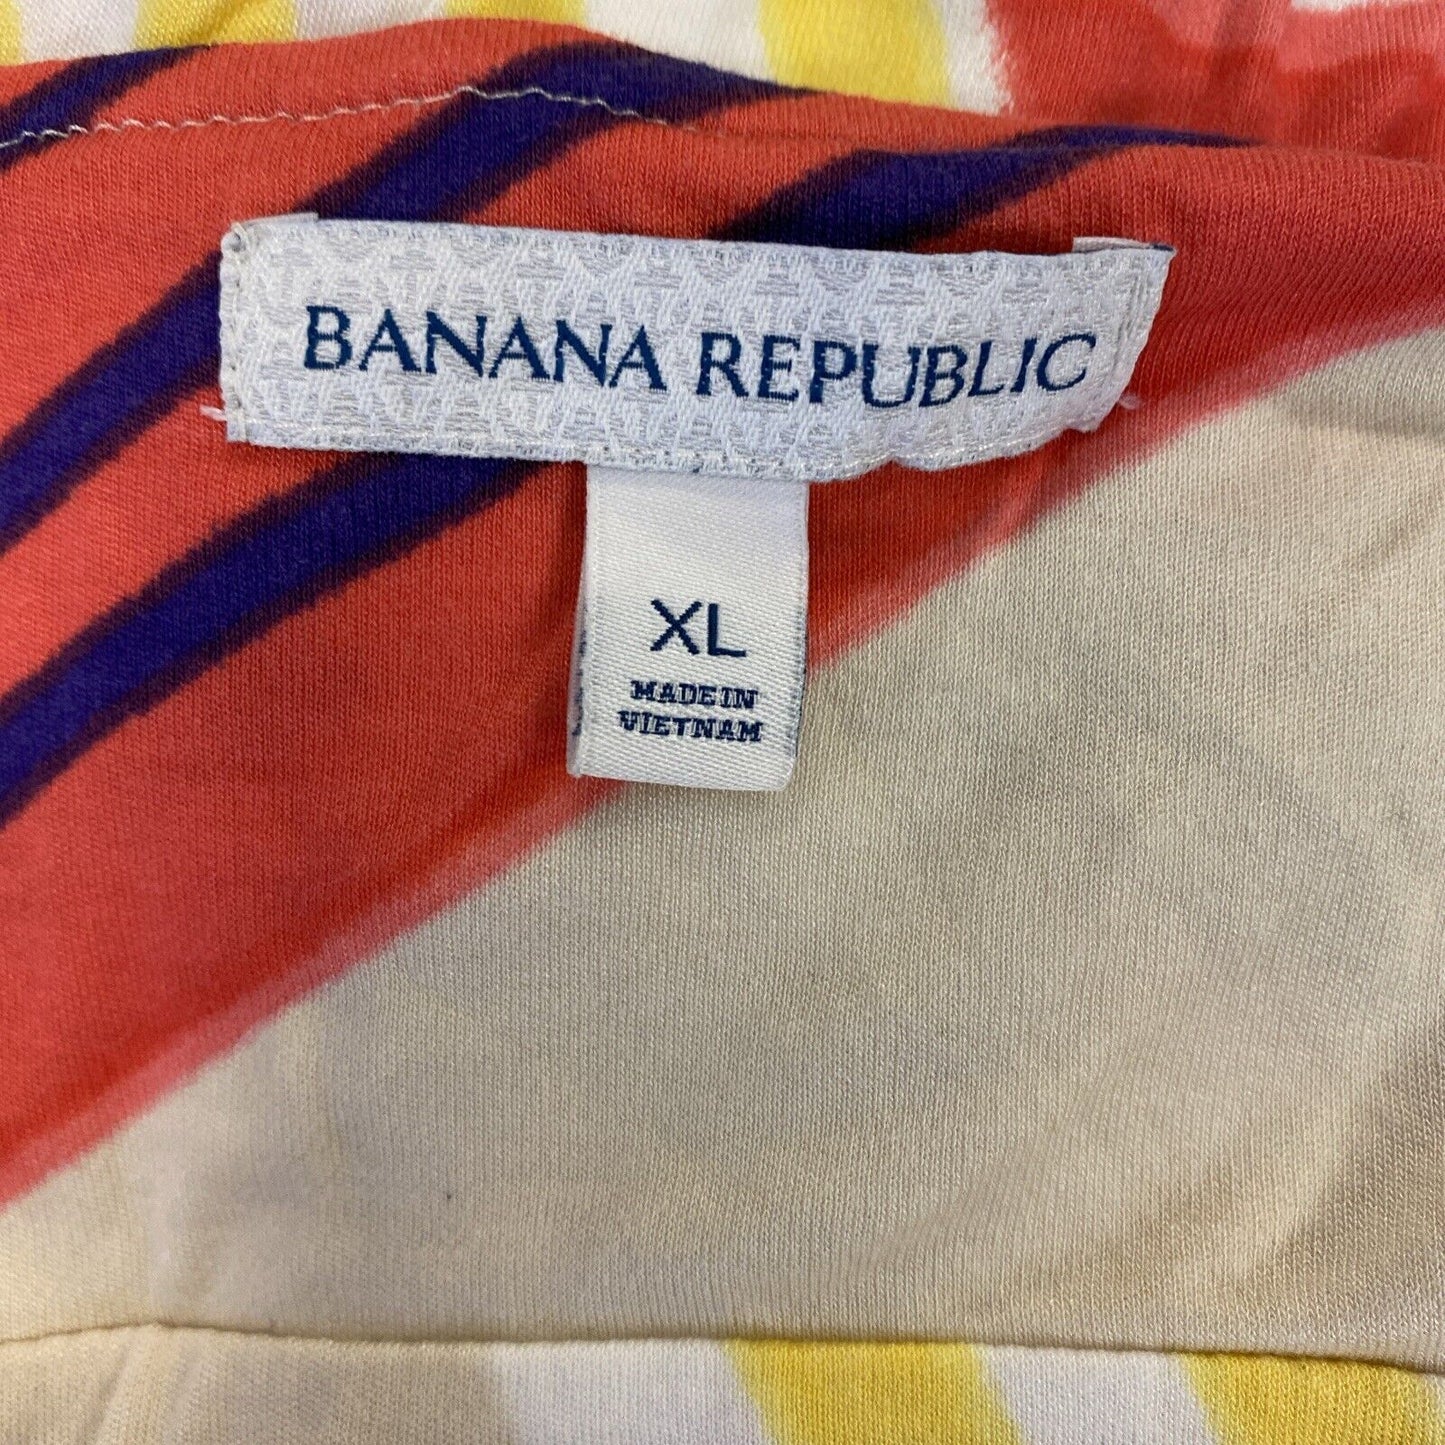 Banana Republic Women's Beige/Pink Long Maxi Dress - XL